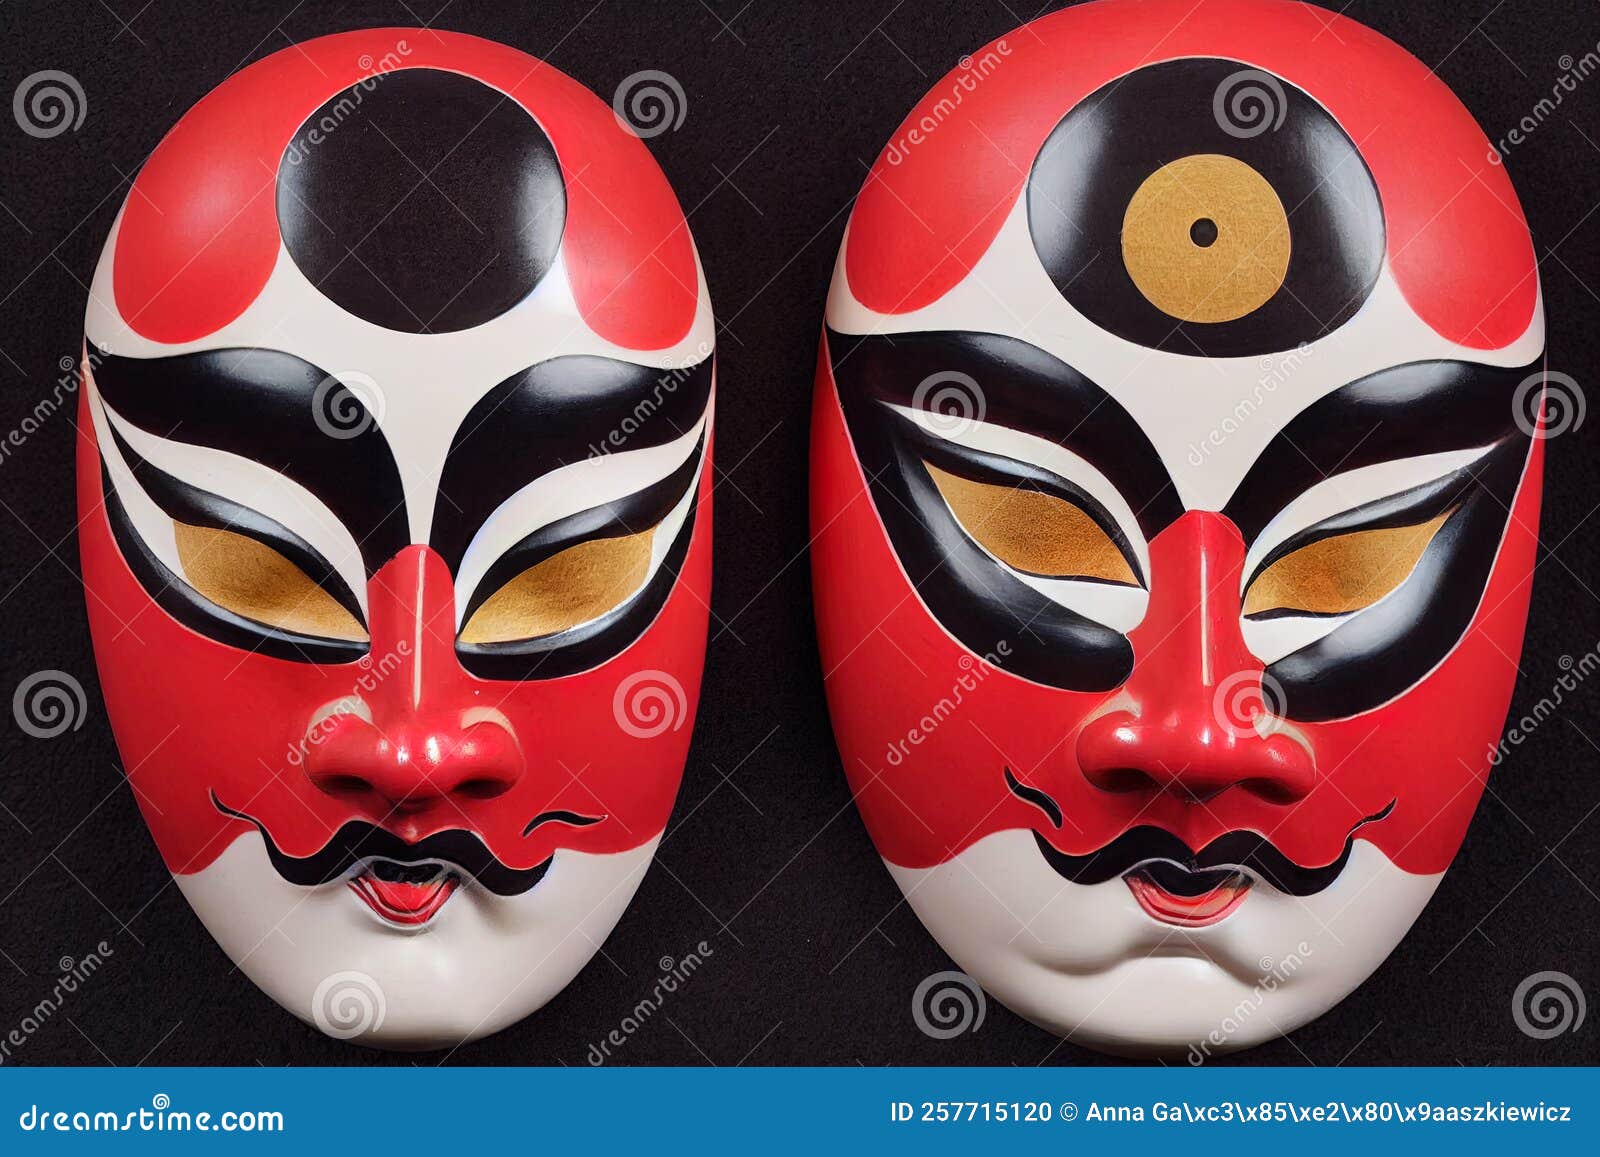 Máscara Facial Peking Opera Pintada Al Estilo Chino